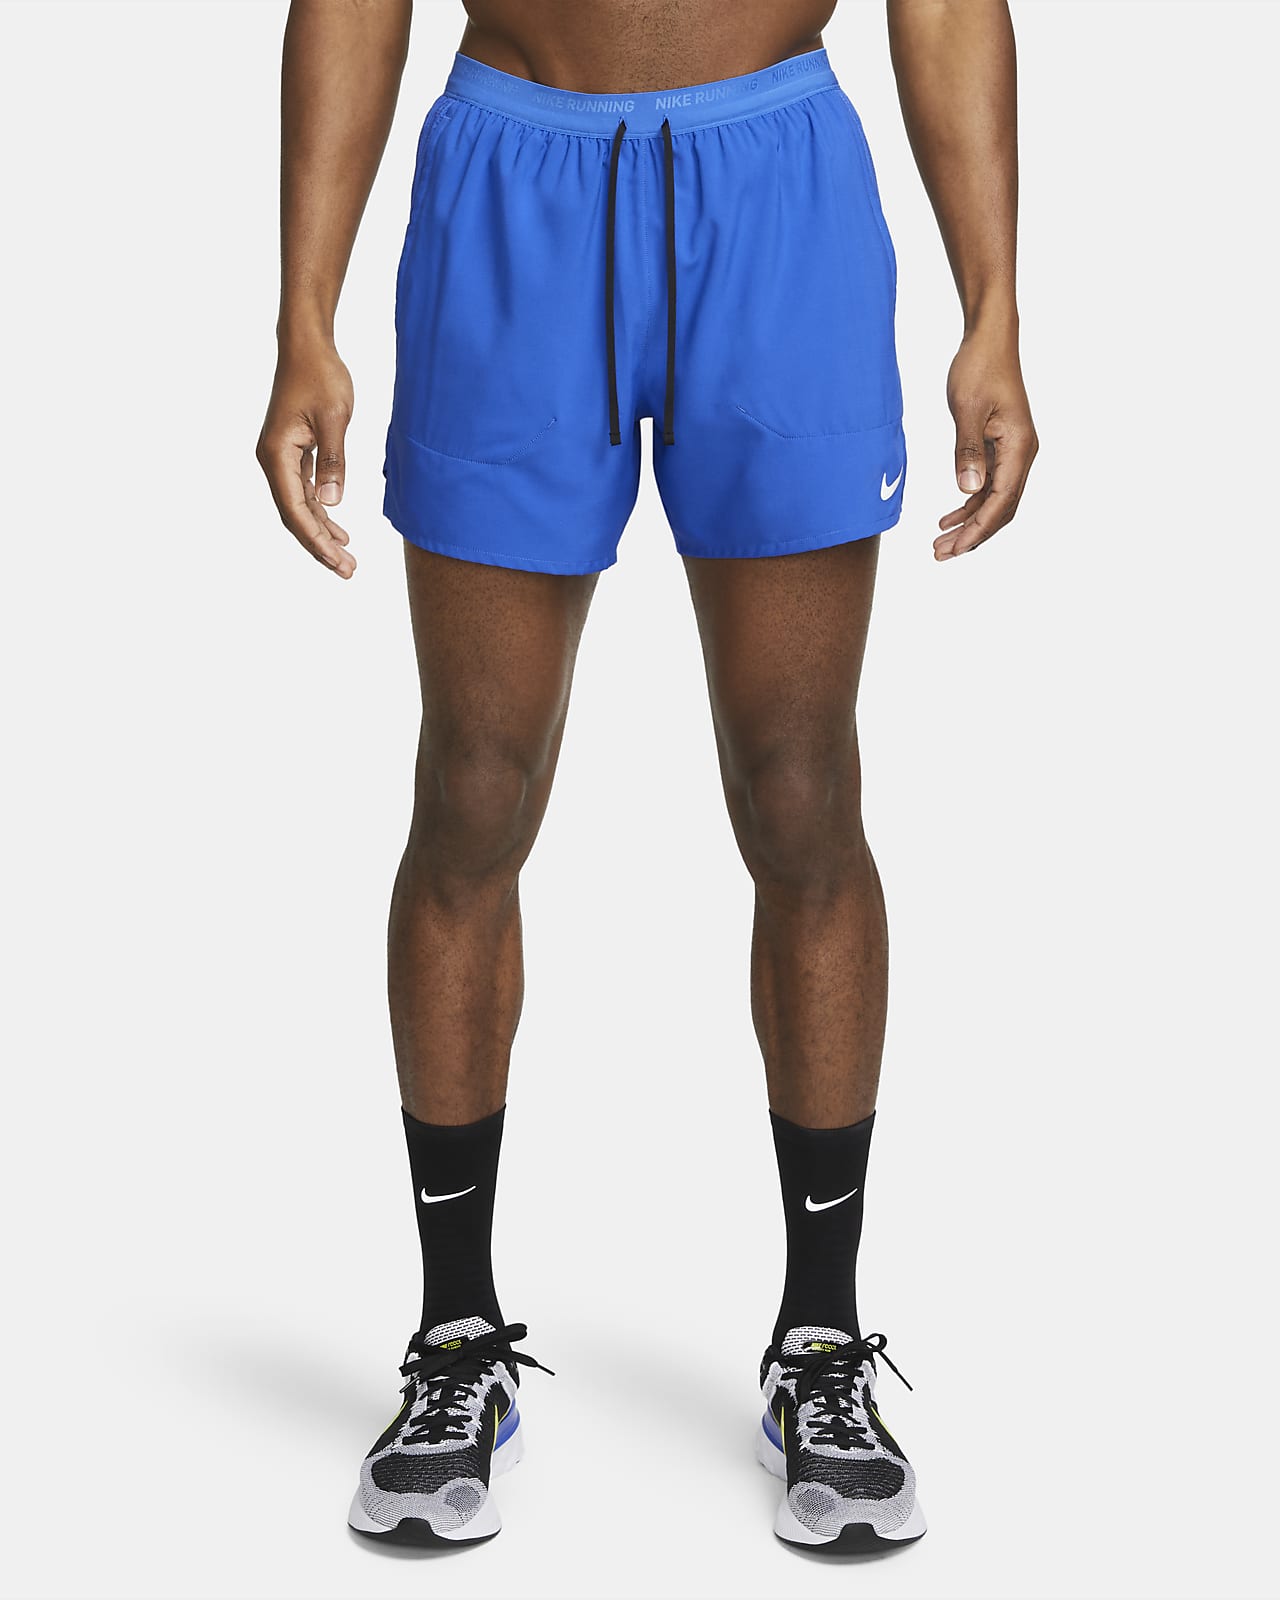 Shorts de running con forro de ropa interior Dri-FIT 12.5 cm para Nike Nike.com